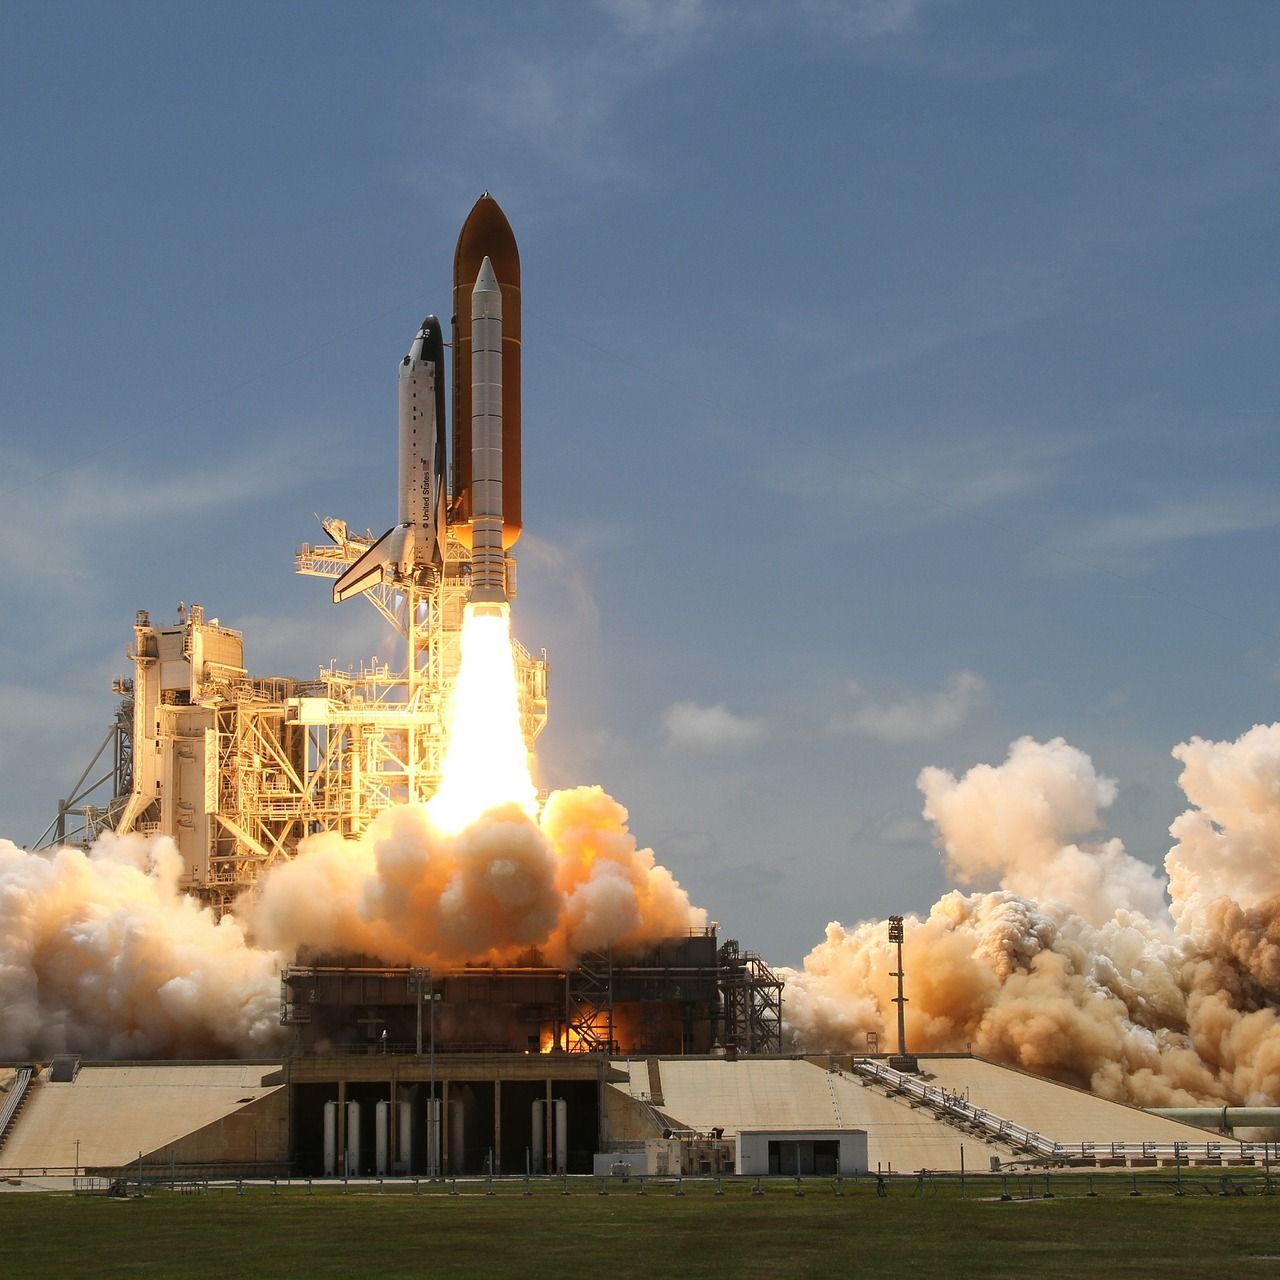 Il lancio della navicella spaziale Space Shuttle dalla base di Cape Canaveral in Florida